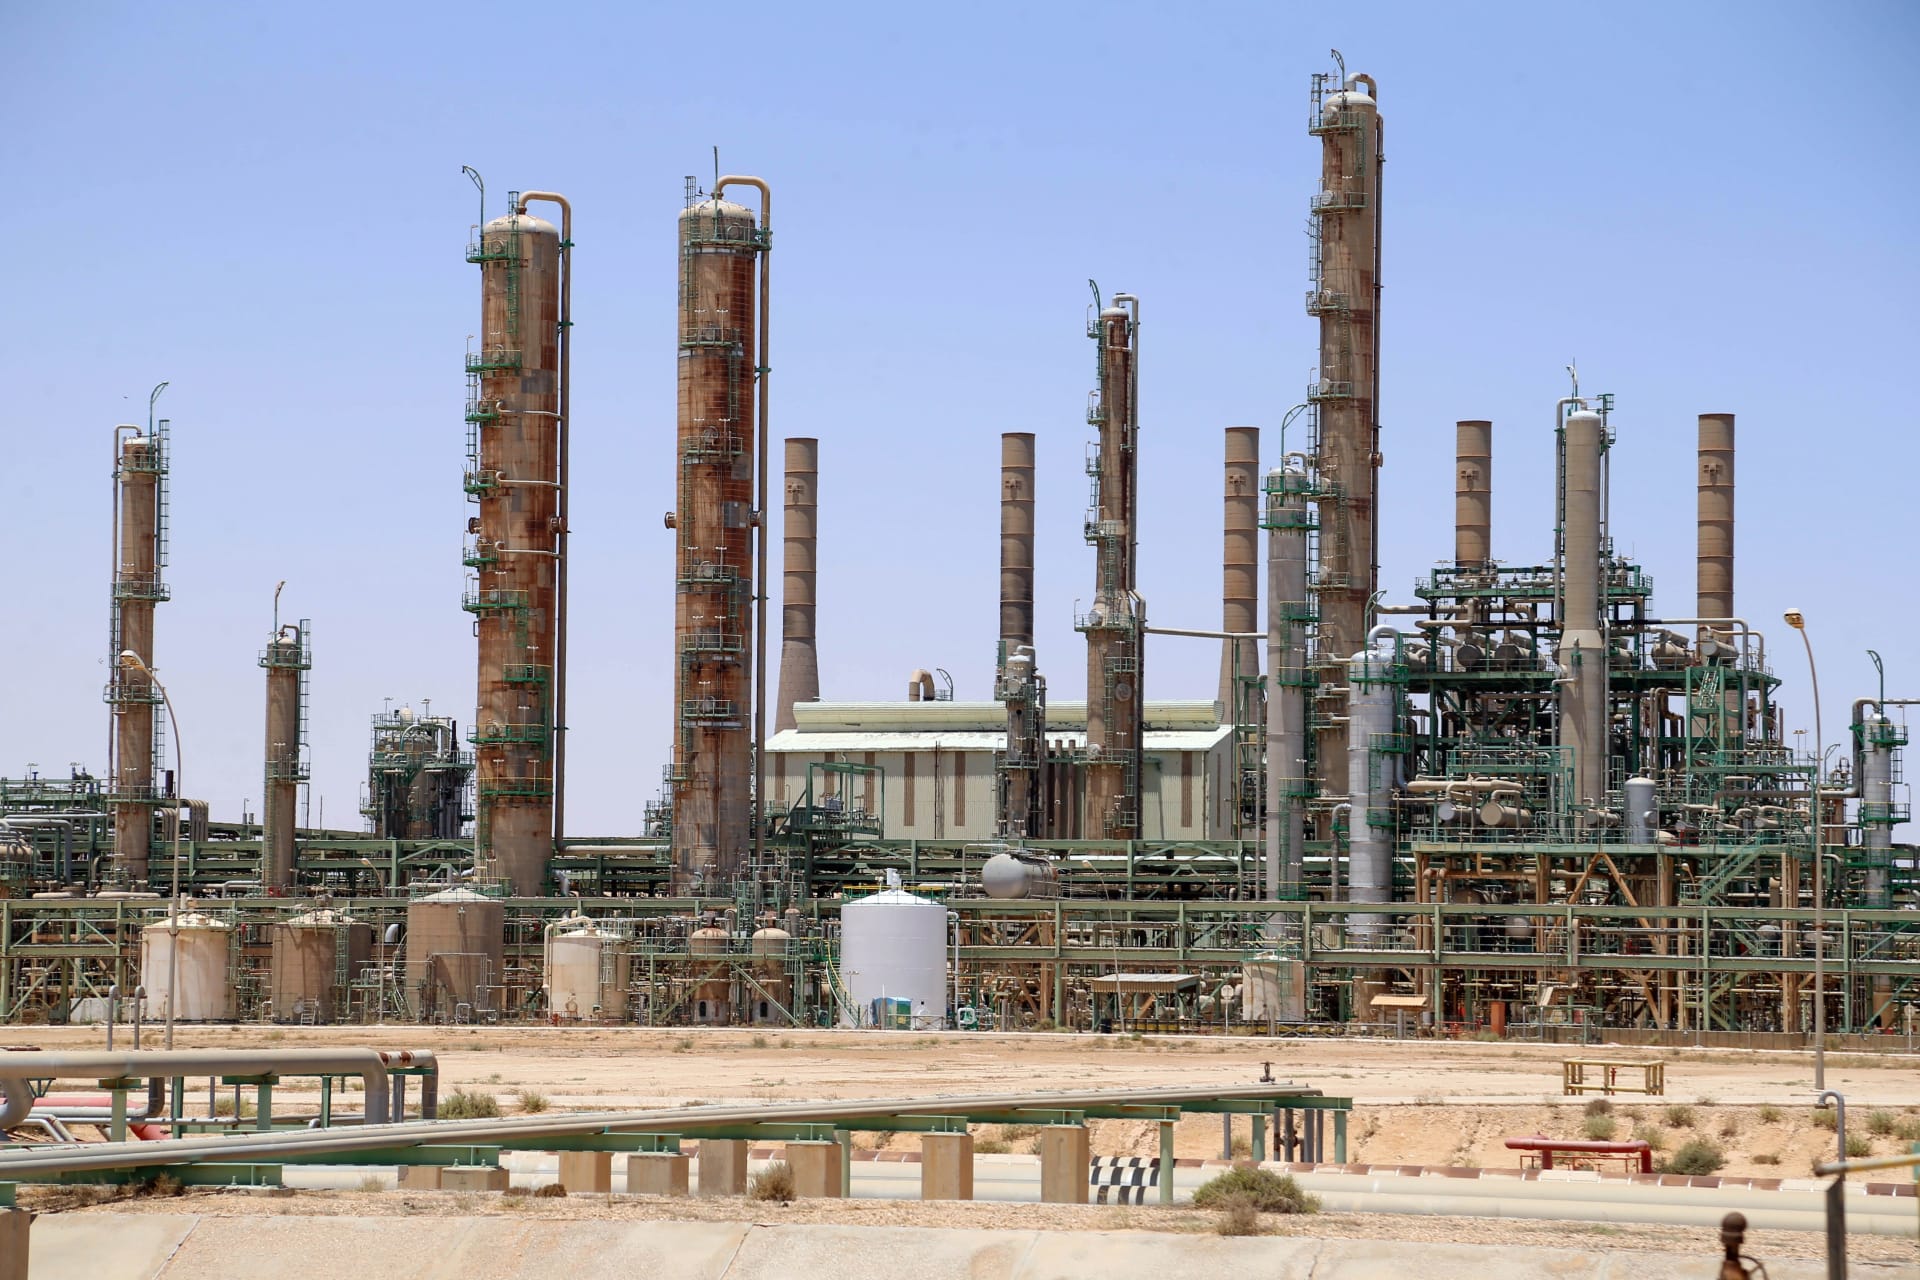 مؤسسة النفط في ليبيا: تلقينا معلومات باستهداف مقرات إحدى شركاتنا بـ"سيارات مفخخة"